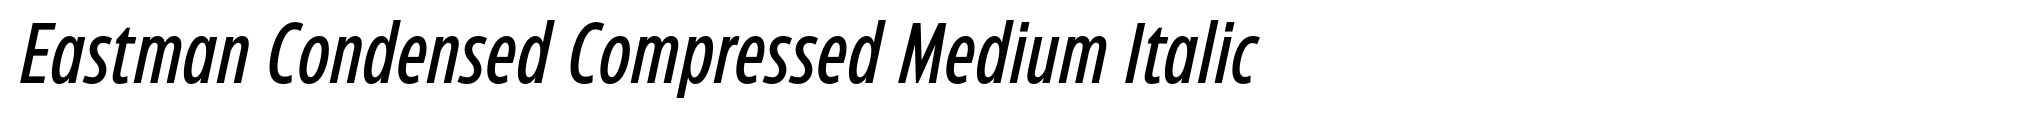 Eastman Condensed Compressed Medium Italic image